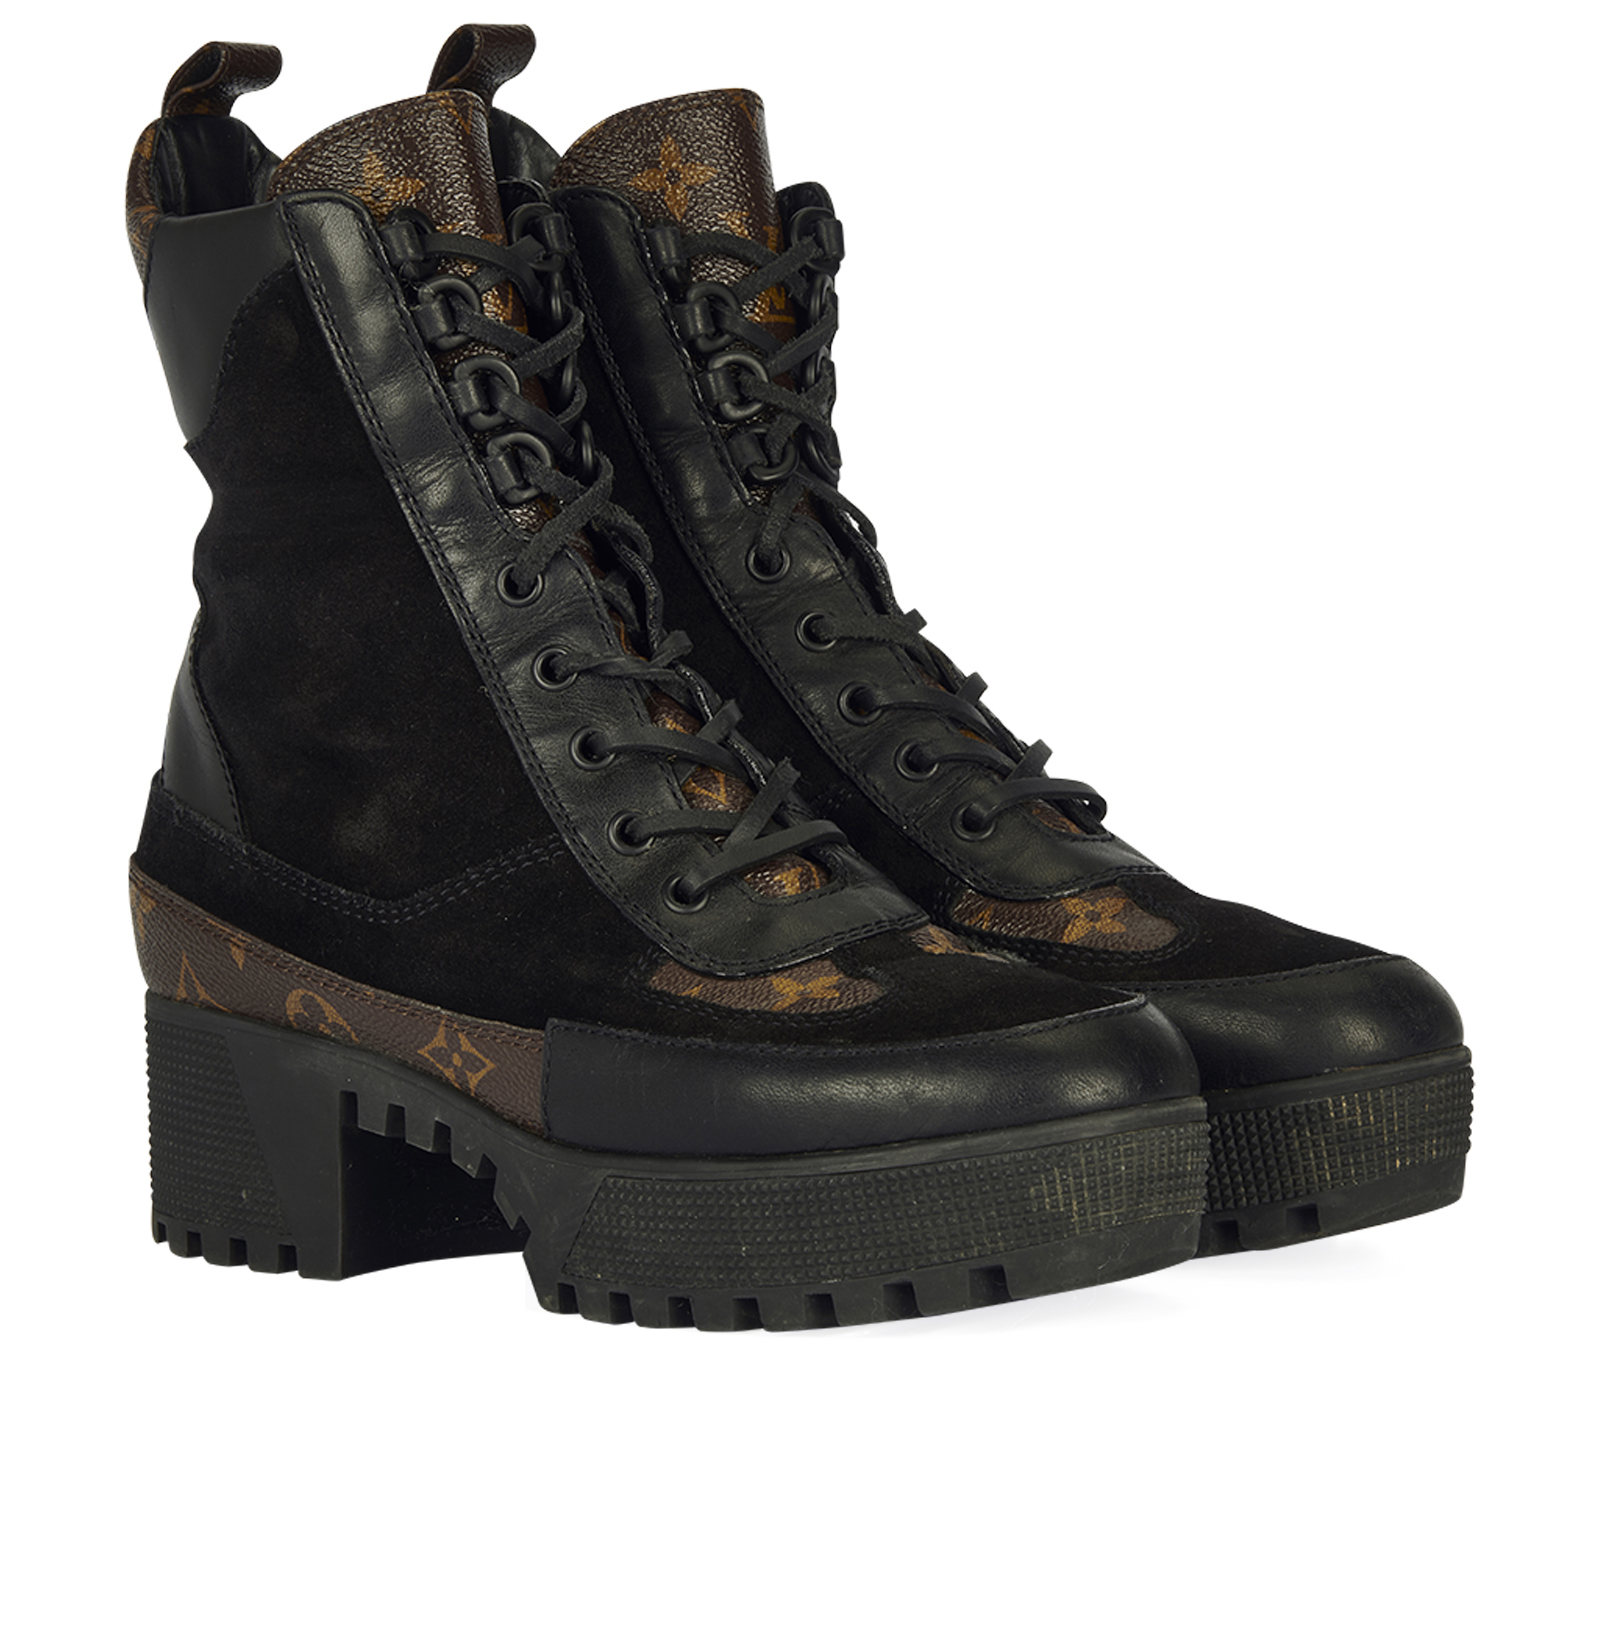 Louis Vuitton Laureate Platform Chelsea Boot BLACK. Size 38.0